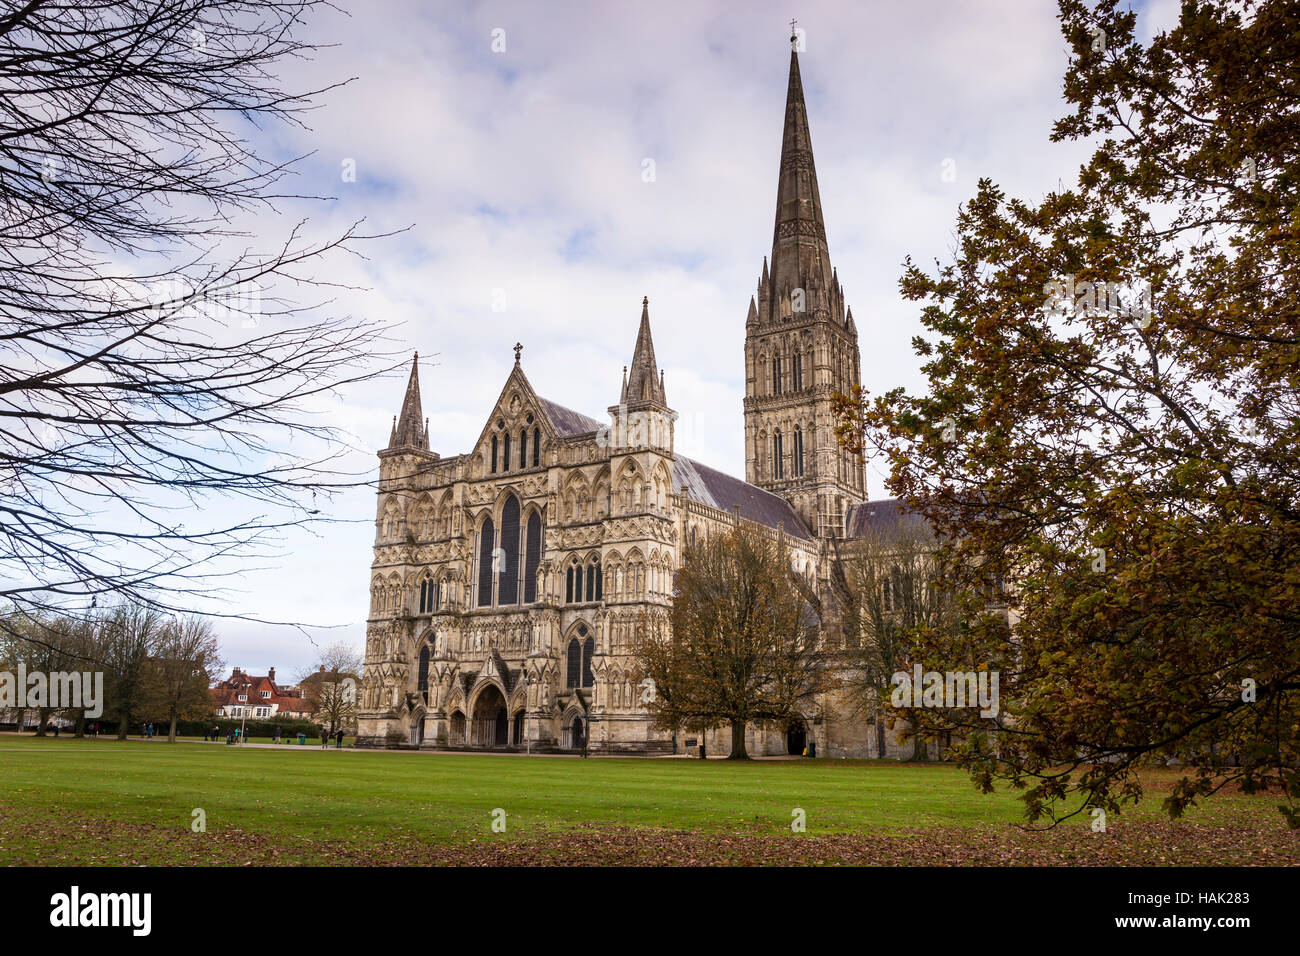 La cathédrale de Salisbury dans le Wiltshire, Angleterre. Banque D'Images